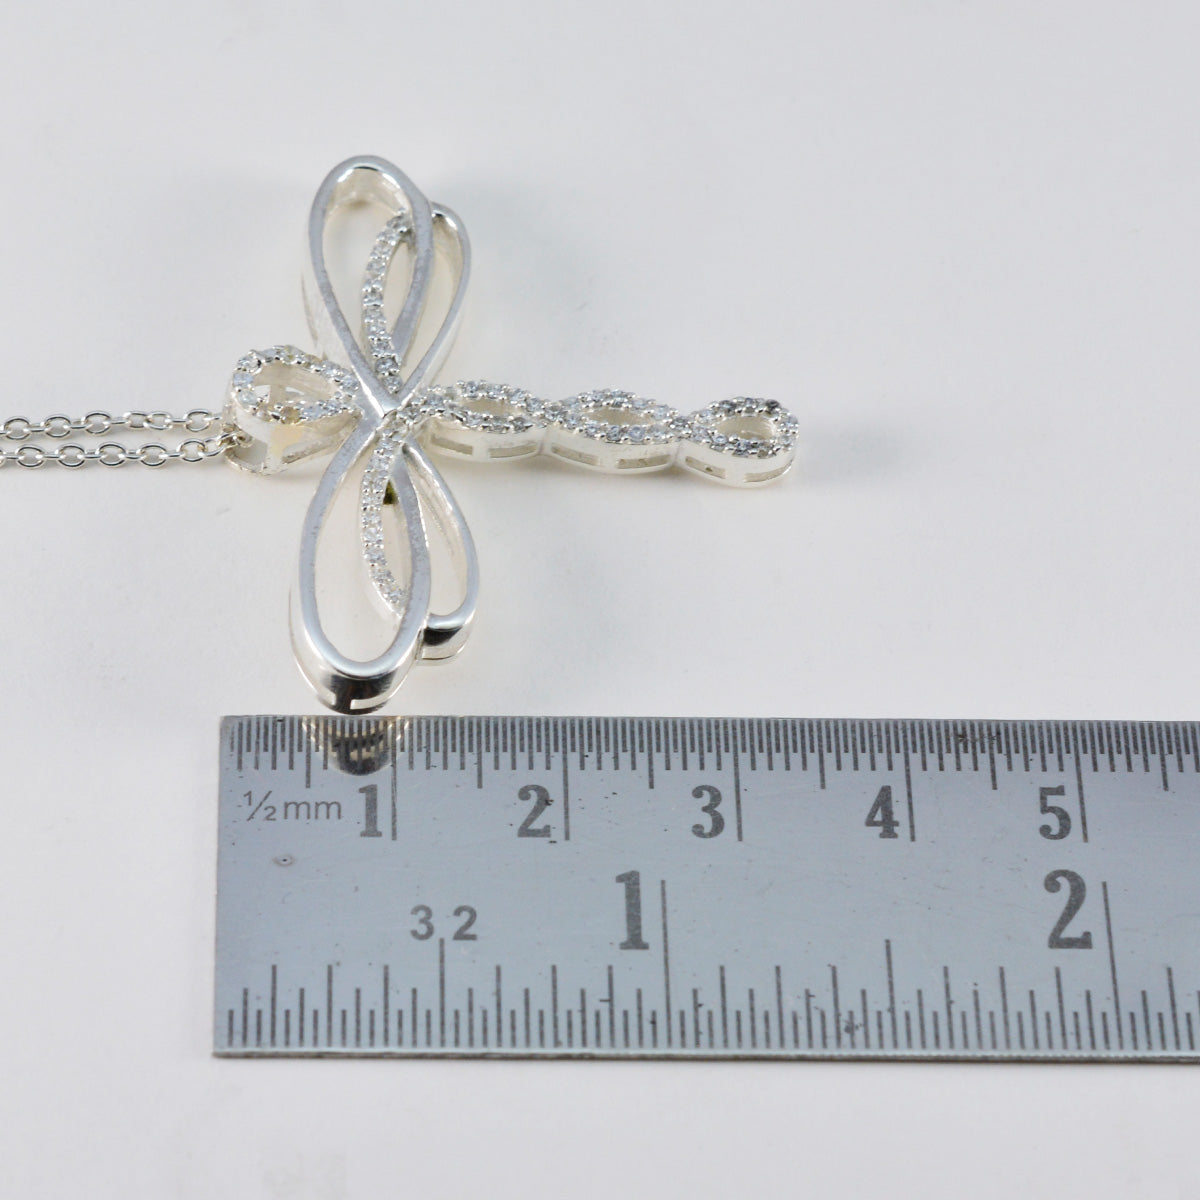 Riyo boeiende edelstenen rond gefacetteerd wit wit cz massief zilveren hanger cadeau voor goede vrijdag